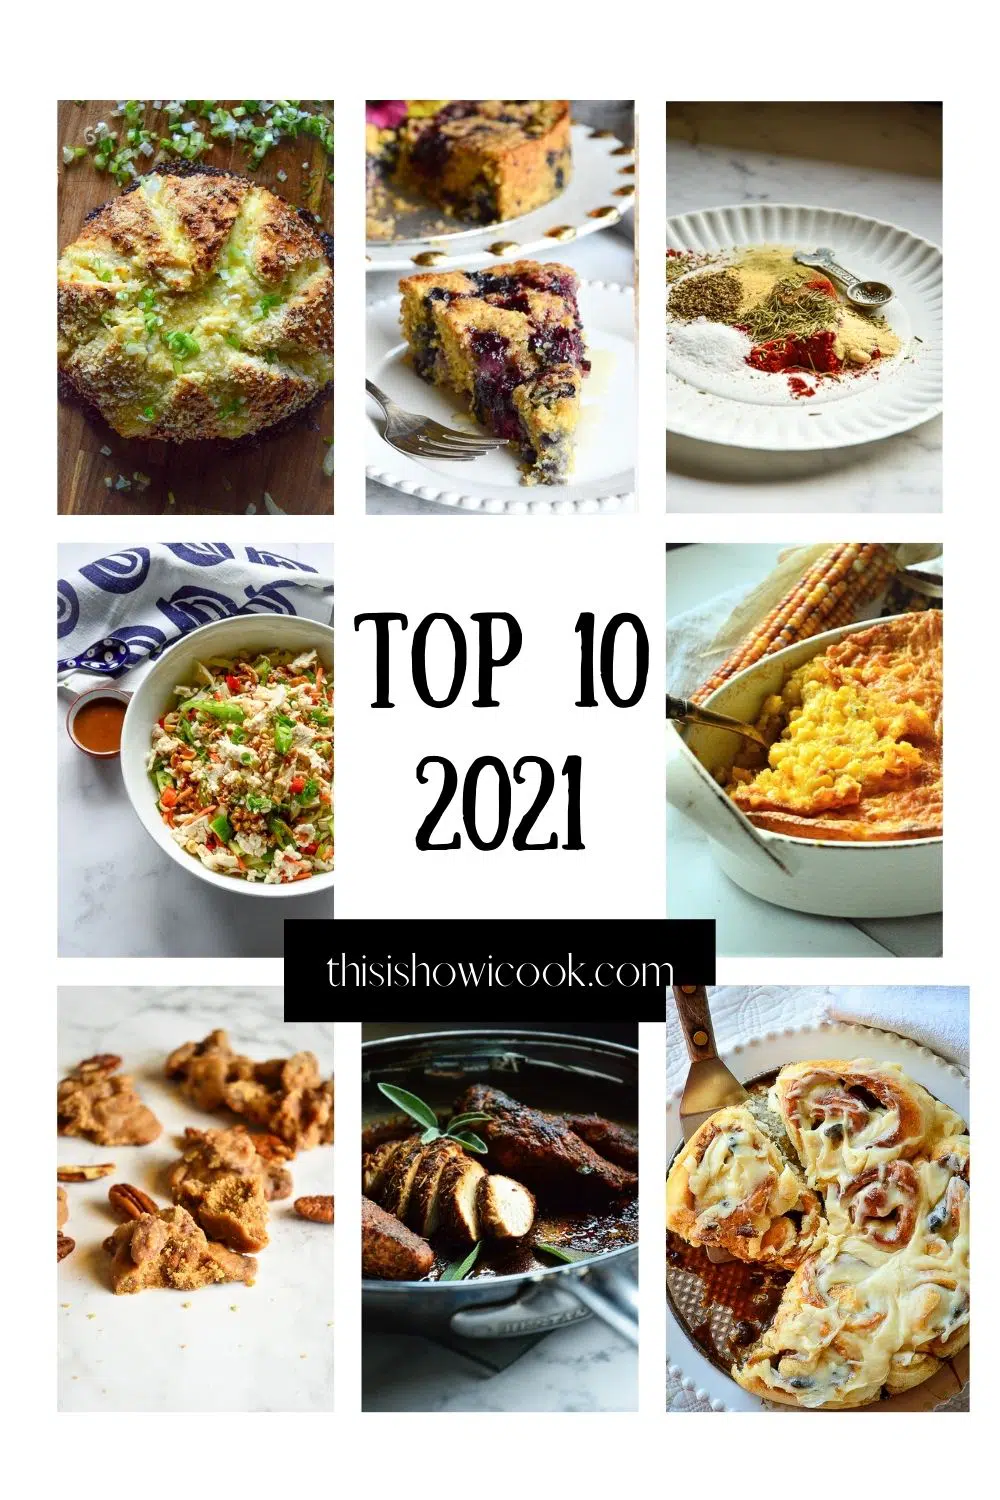 Top 10 Recipes of 2021